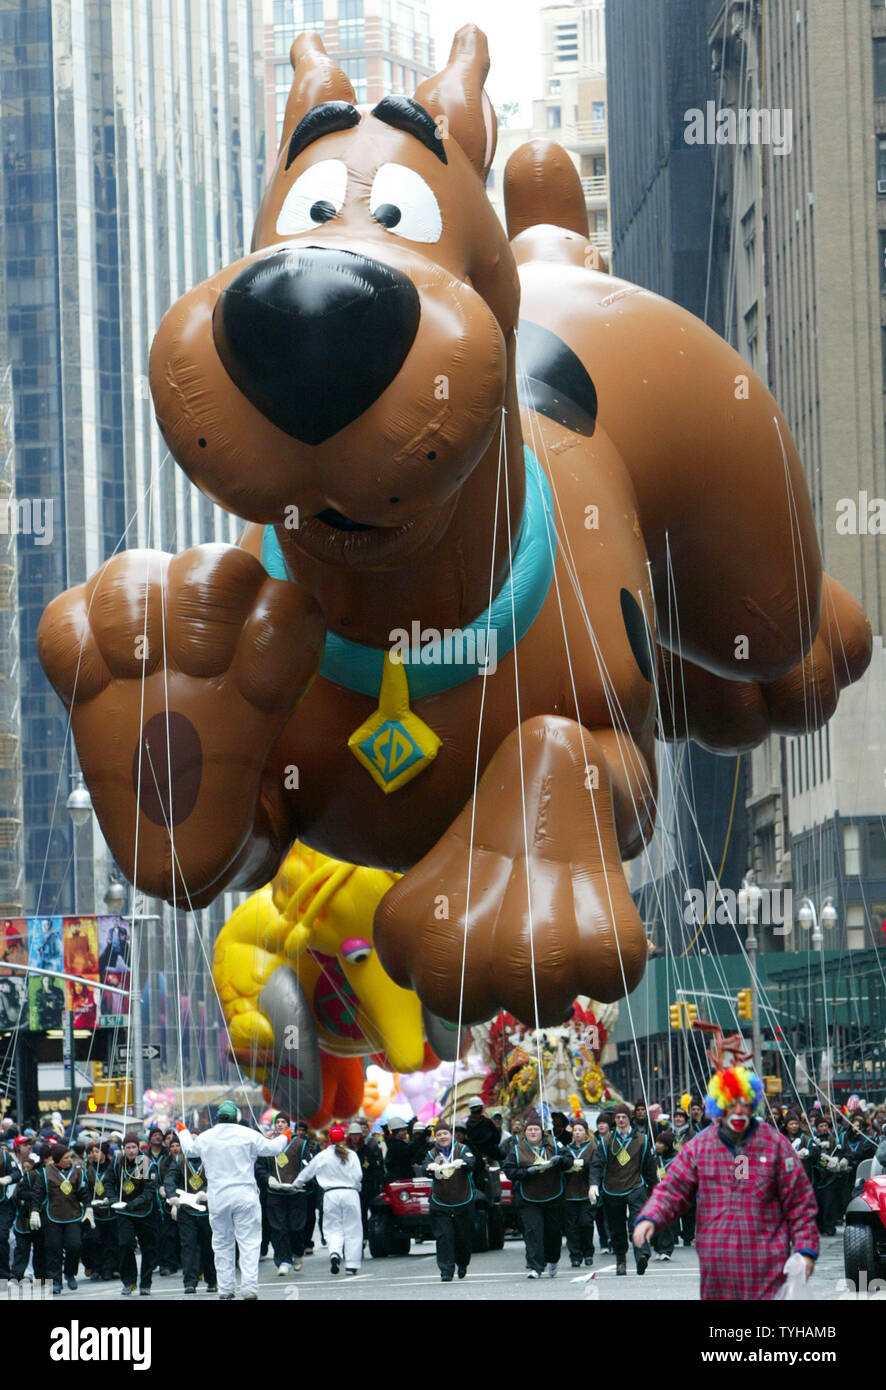 Scooby Doo l'hélium ballon géant, suivi de grand oiseau, est guidé sur  Broadway au cours de la 79e l'action de Macy's Day Parade le 24 novembre  2005 à New York. (Photo d'UPI/Monika